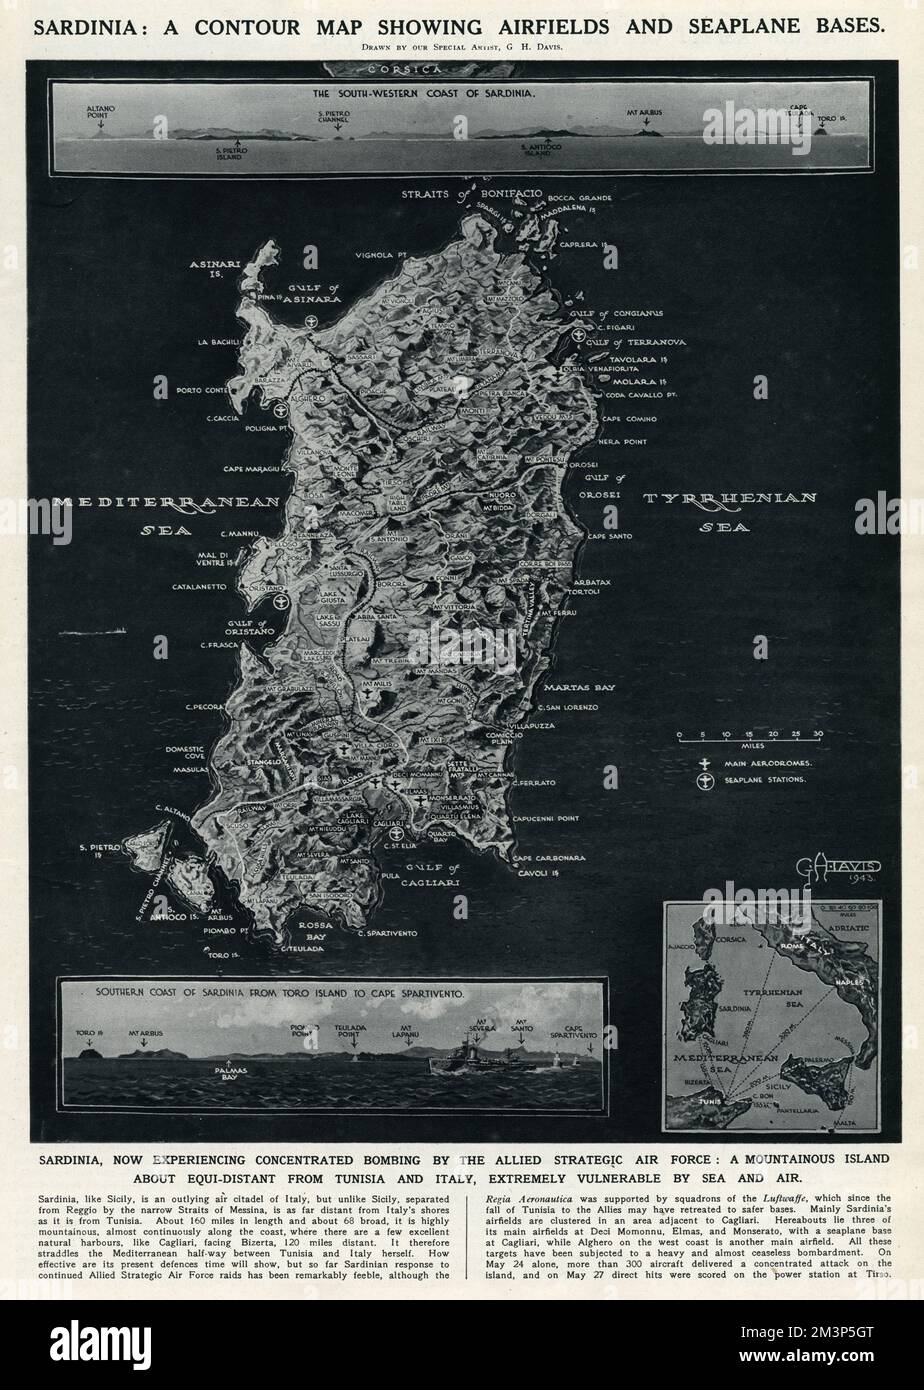 Una mappa contornata della Sardegna, che mostra i campi aerei e le basi degli idrovolanti durante la seconda guerra mondiale. L'isola stava sperimentando un bombardamento concentrato da parte delle forze aeree strategiche alleate. Data: 1943 Foto Stock